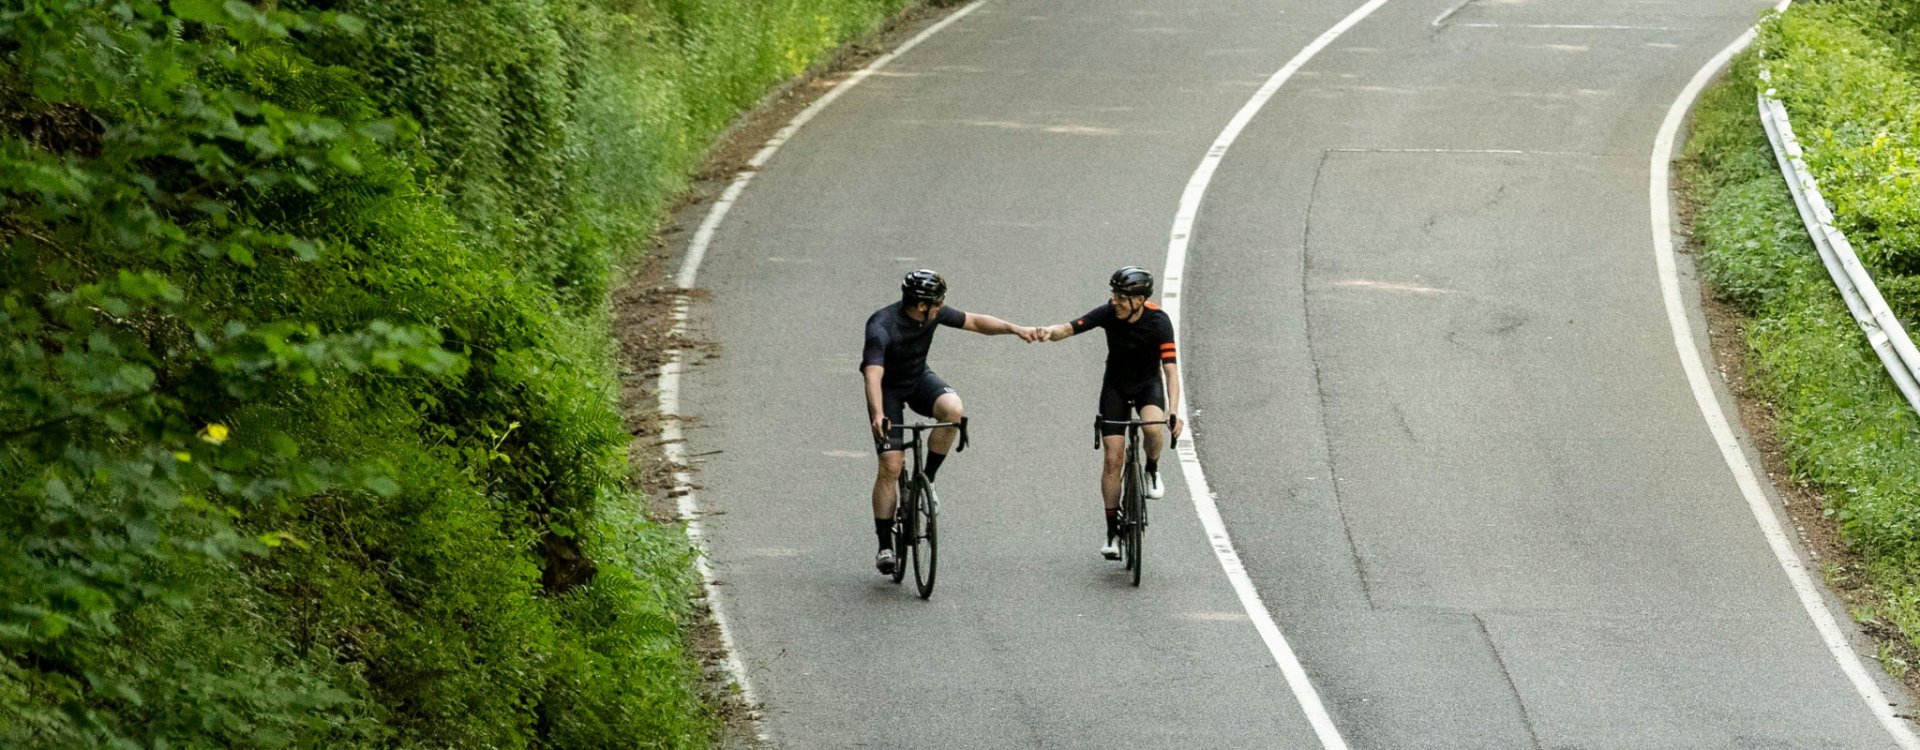 Dos ciclistas de ruta en bicicletas Specialized Tarmac SL7 se dan un saludo felicitándose una vez culminado el ascenso.